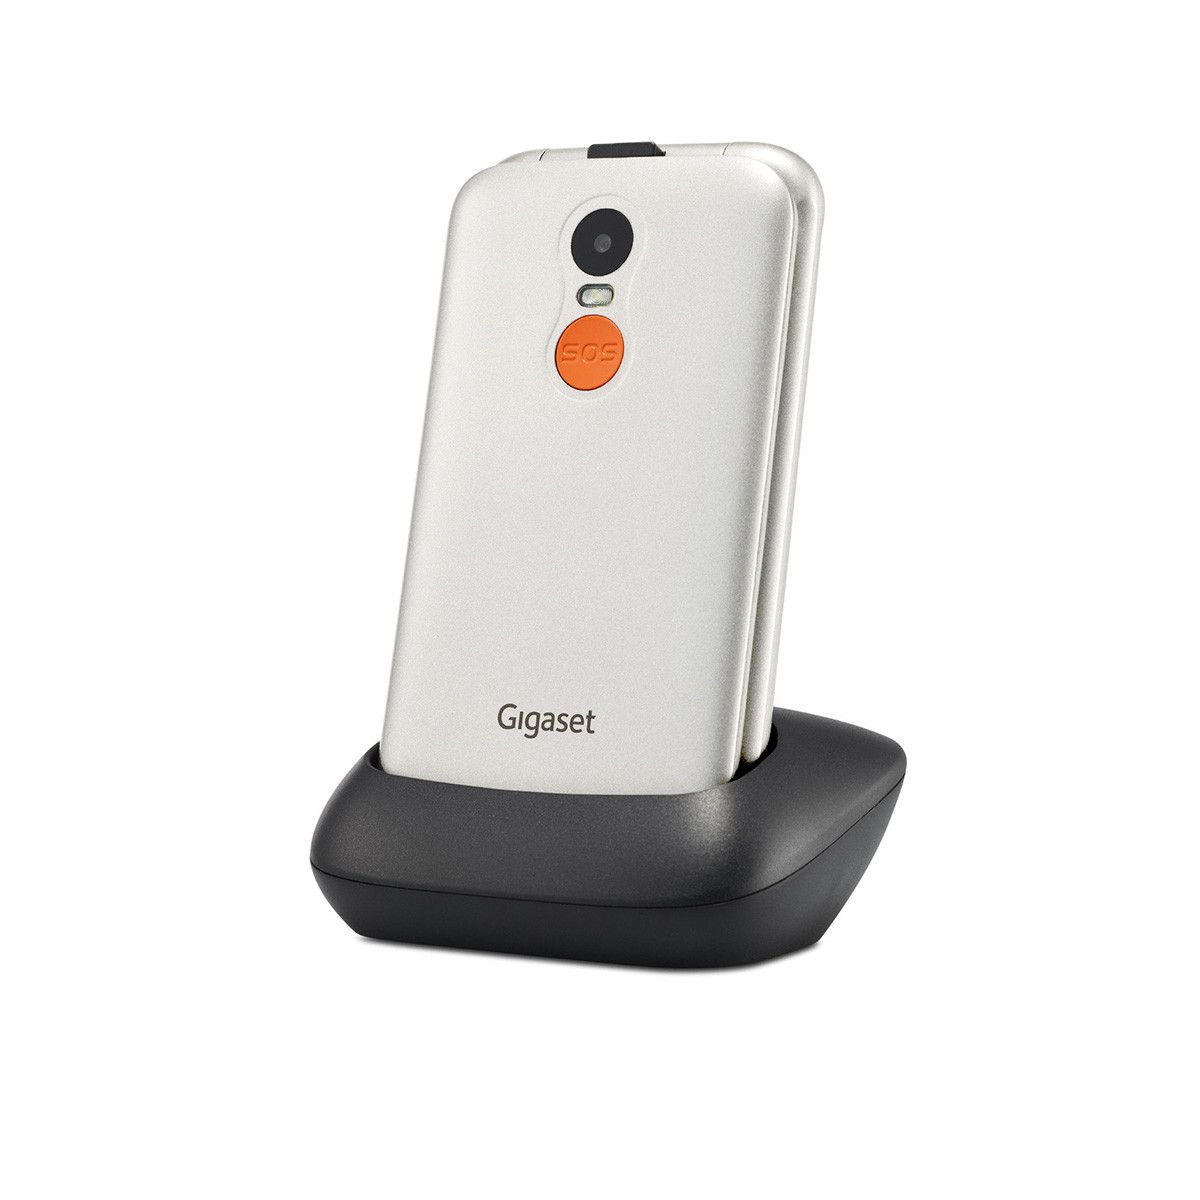 Gigaset GL590 2G MP Technomarkt expert Smartphone Dual (2.8 Zoll) von 7,11 0,3 Sim cm (Weiß)